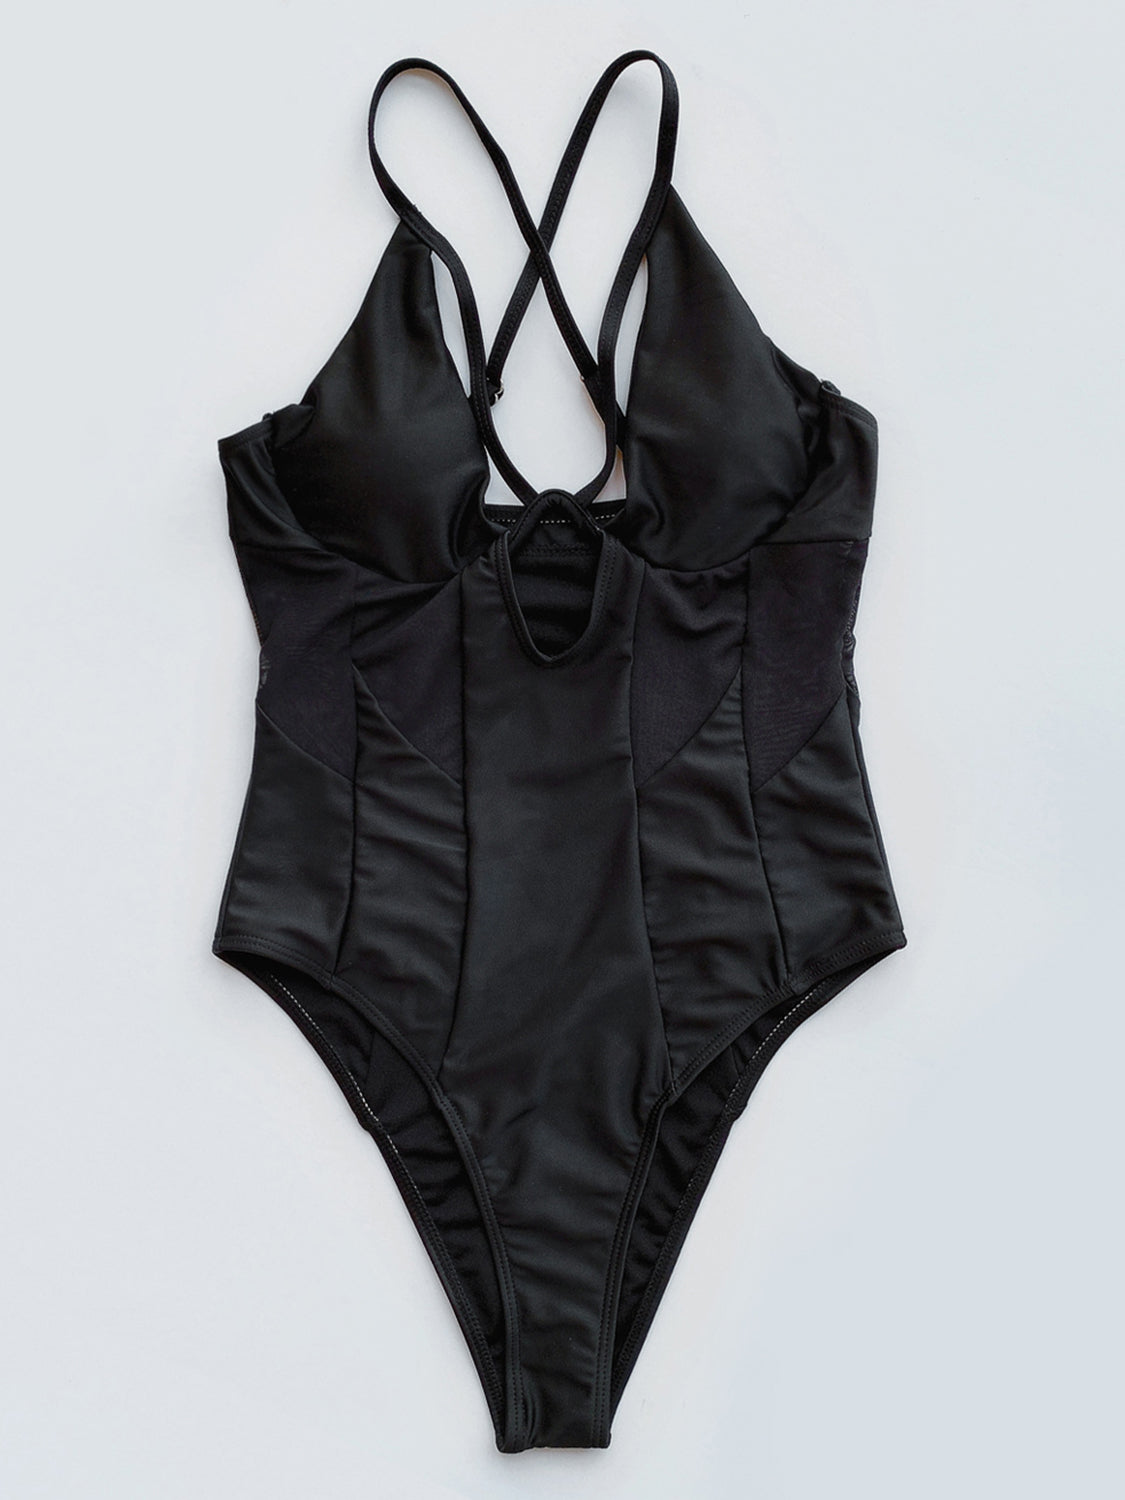 TEEK - Black Crisscross Spaghetti Strap One-Piece Swimwear SWIMWEAR TEEK Trend   